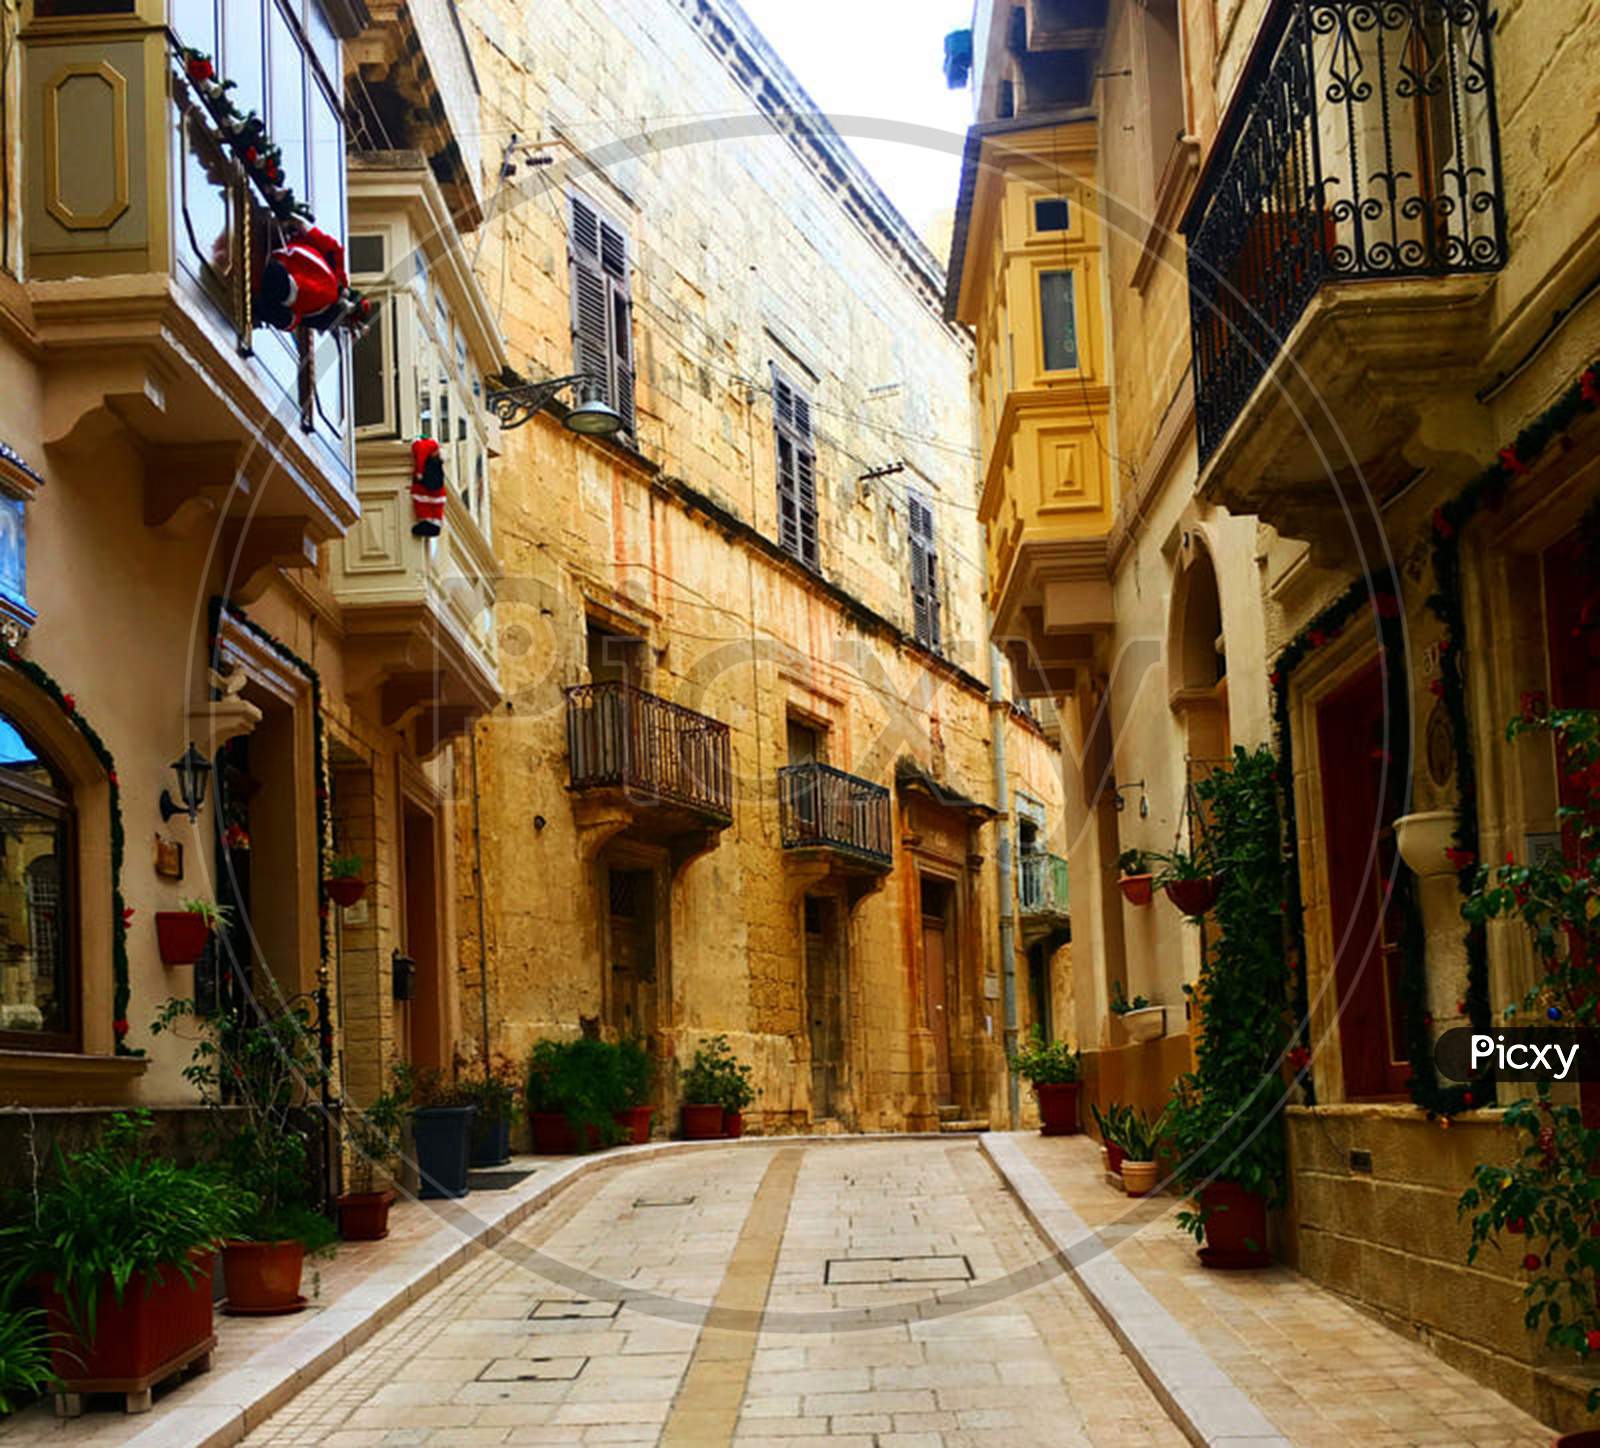 Malta pictures